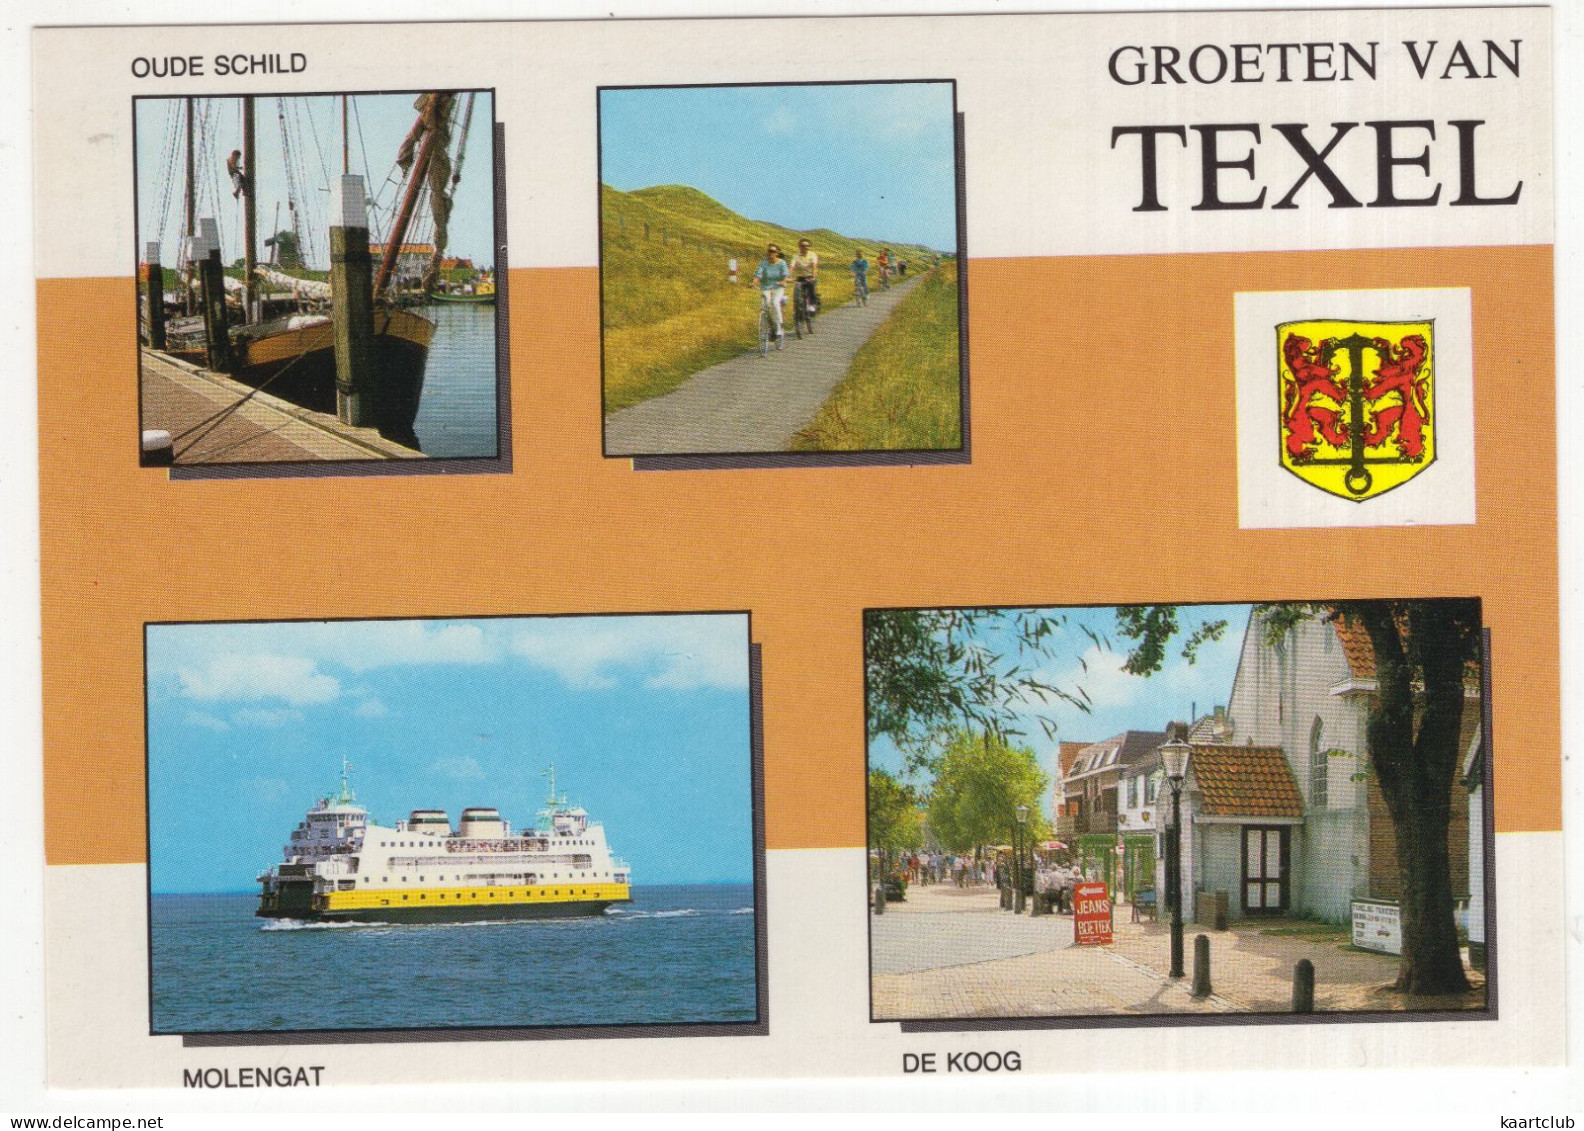 Groeten Van Texel: Oude Schild, Molengat, De Koog - (Wadden, Nederland/Holland) - Nr. TEL 23 - Texel